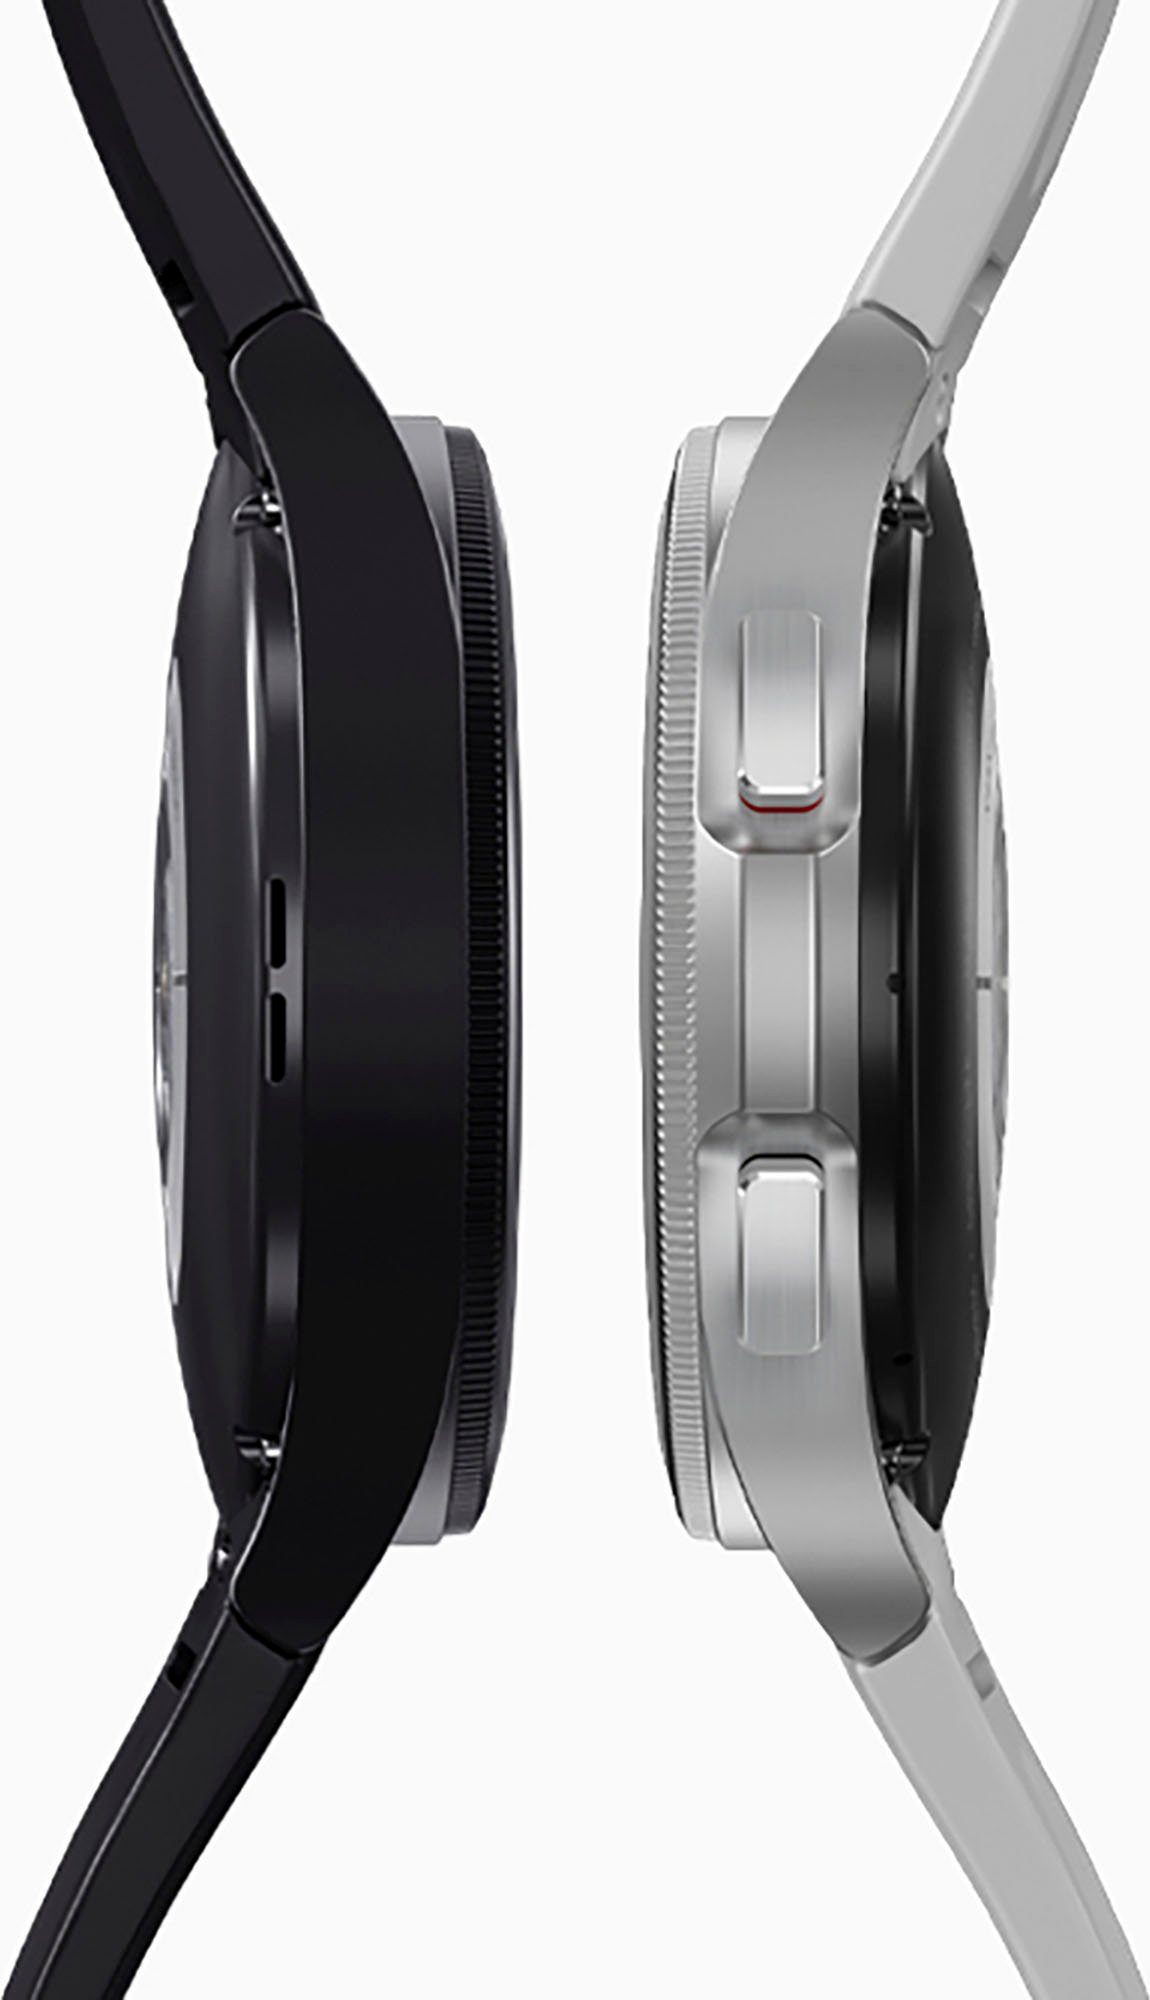 Samsung Galaxy Watch silberfarben | Fitness by OS Zoll, Gesundheitsfunktionen 4 Google), Uhr, Tracker, 46mm cm/1,4 LTE Fitness Smartwatch silberfarben classic (3,46 Wear